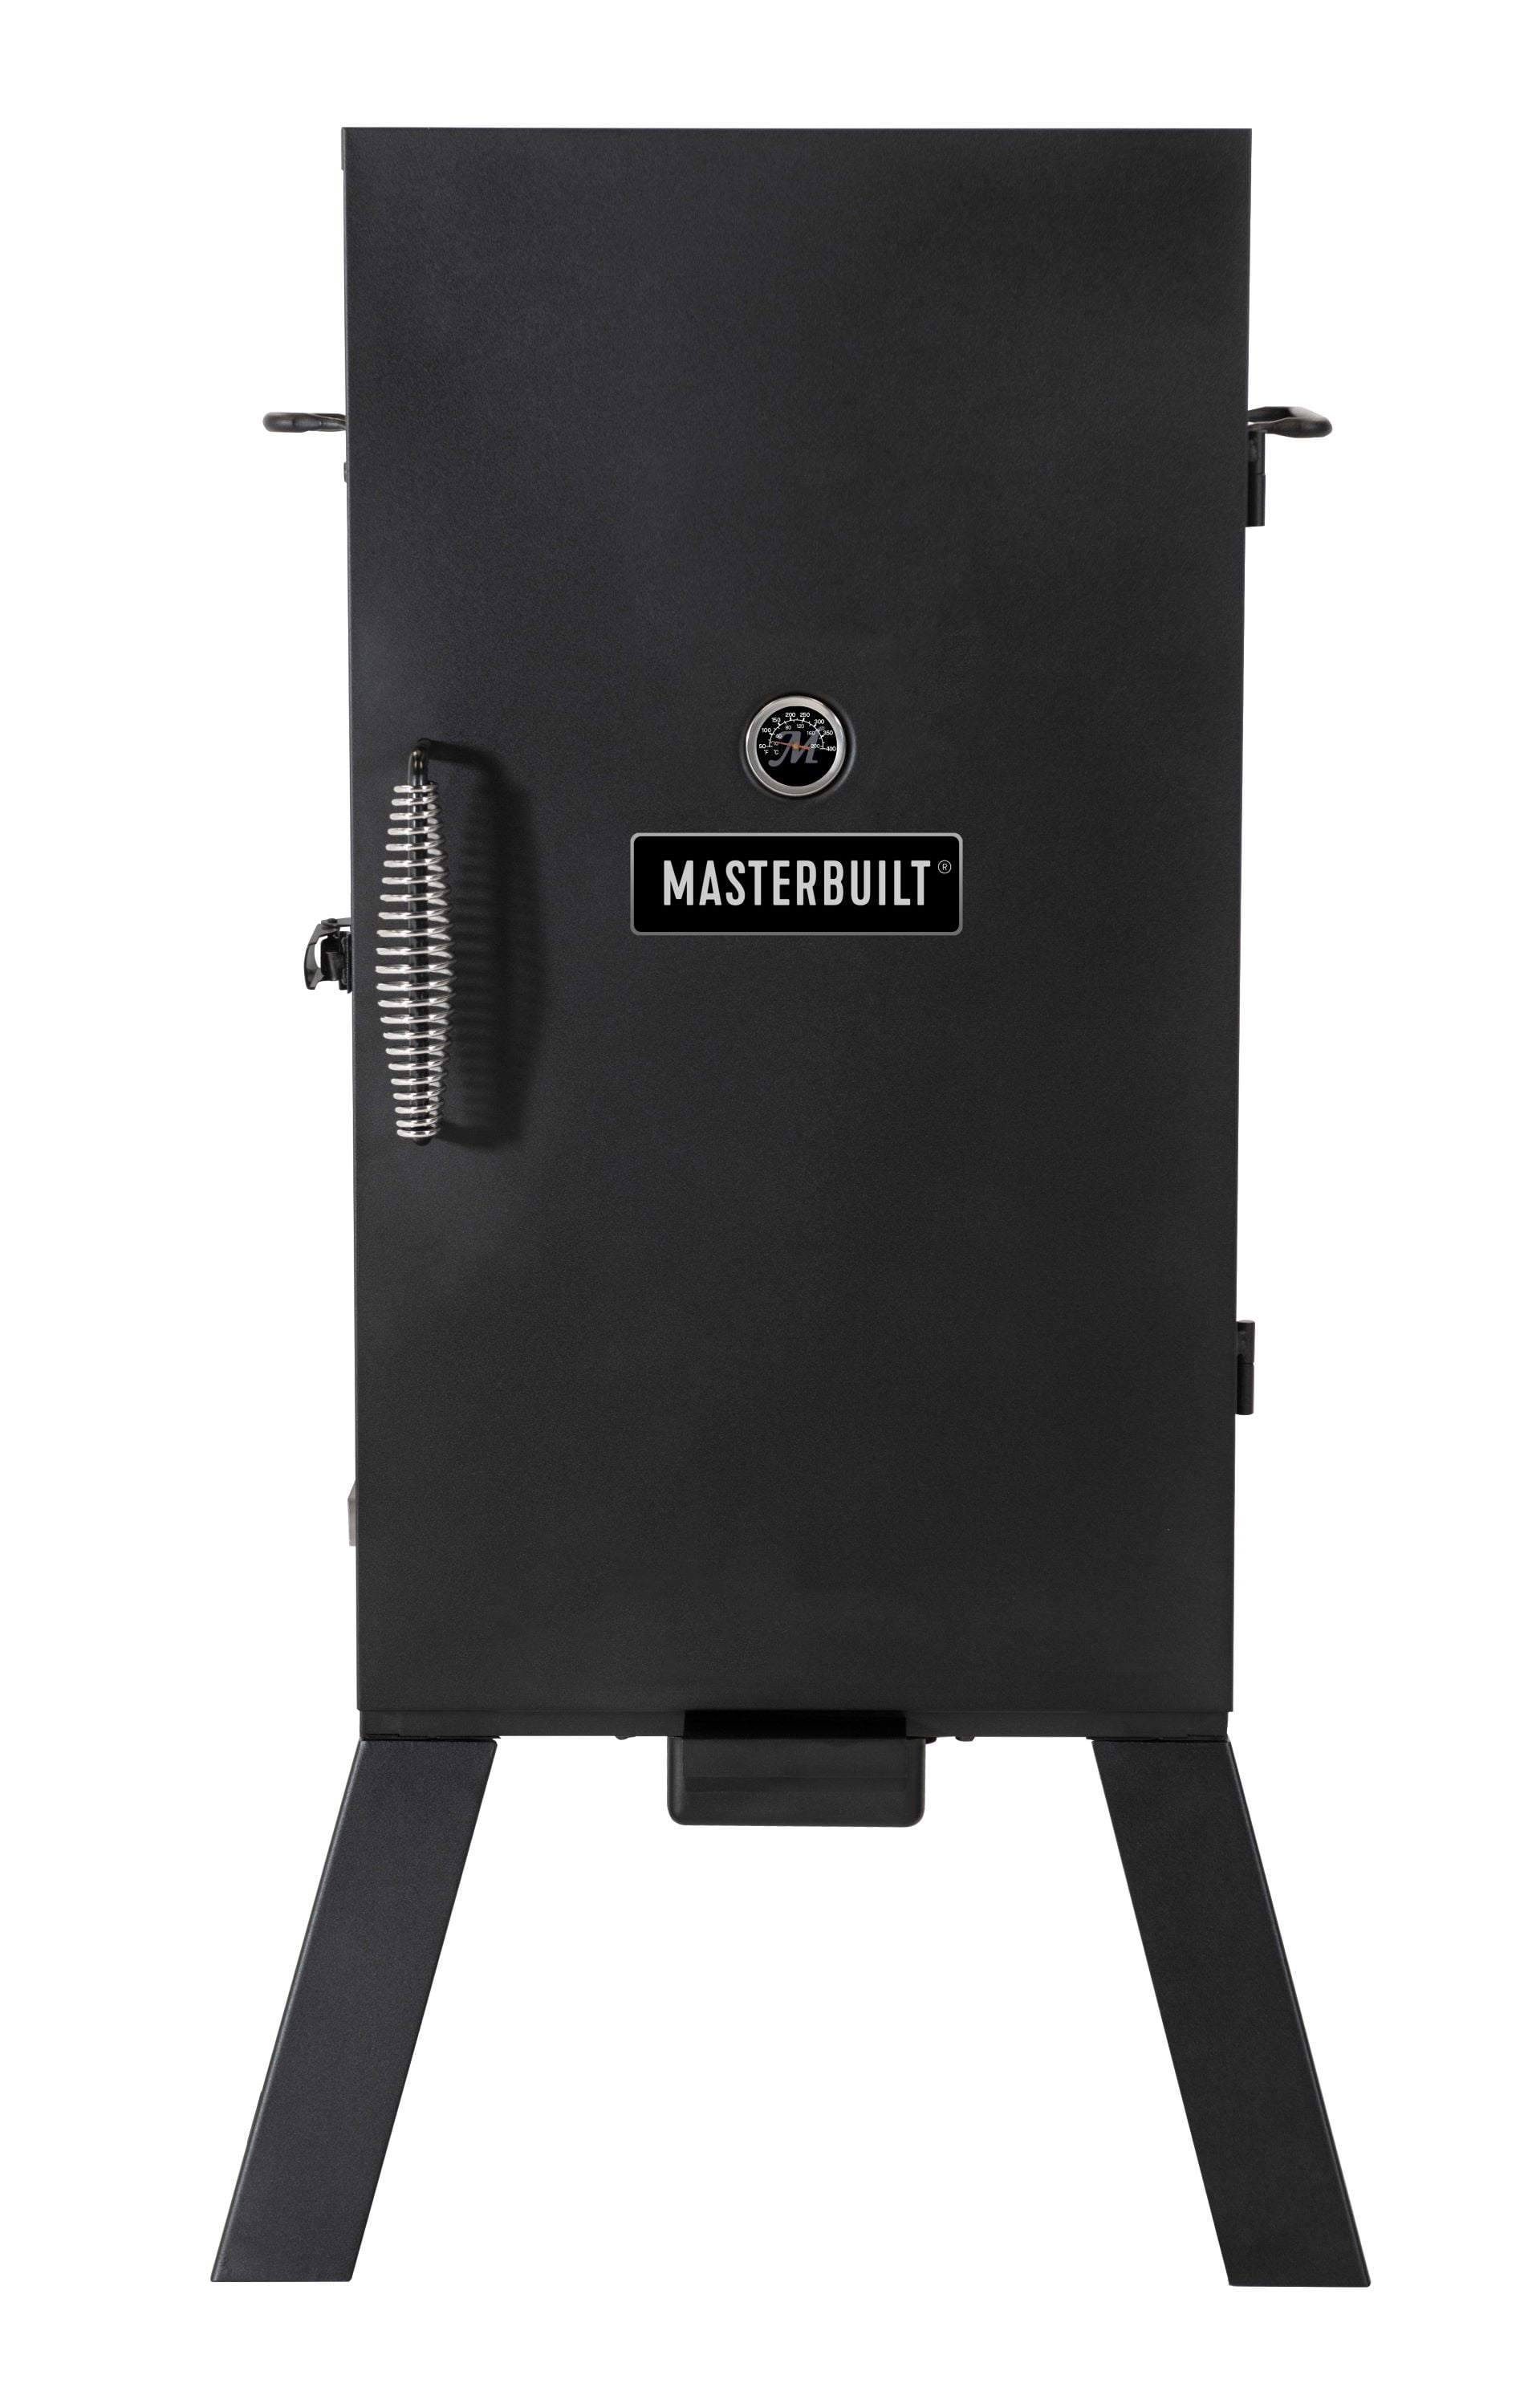 Masterbuilt 30 Analog Electric Smoker - 2 Rack